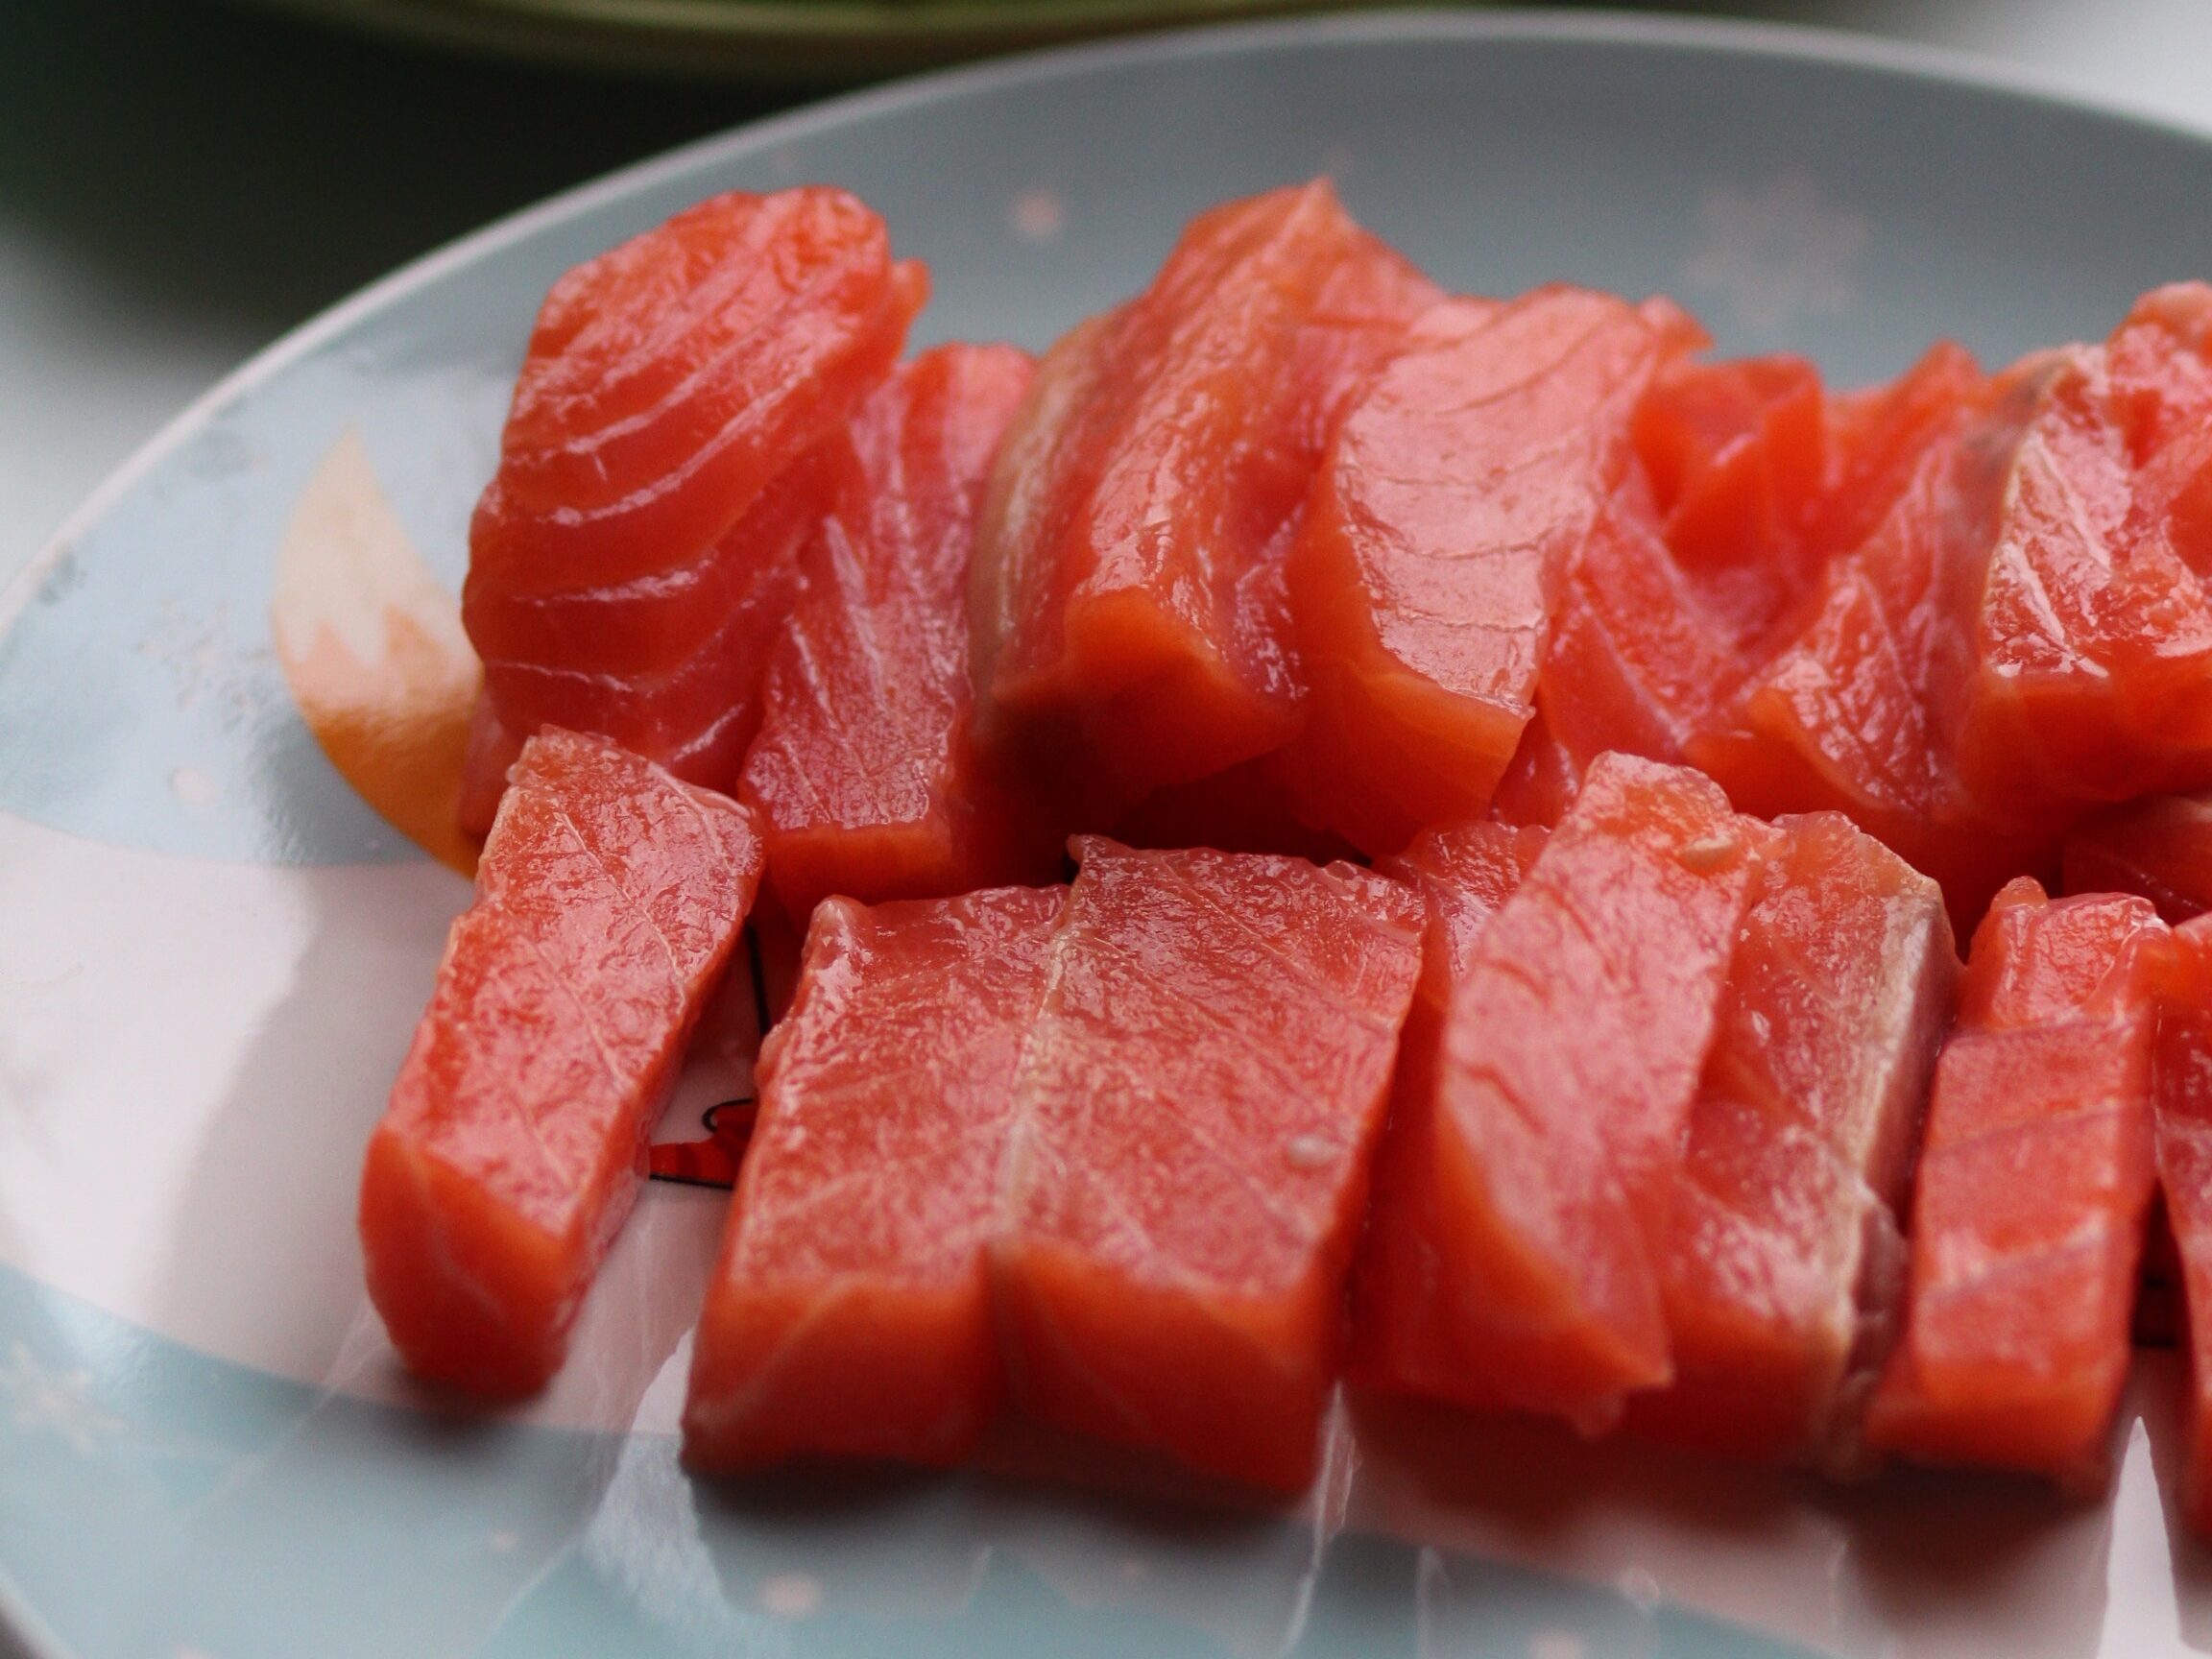 Weight loss lunch idea: tuna.